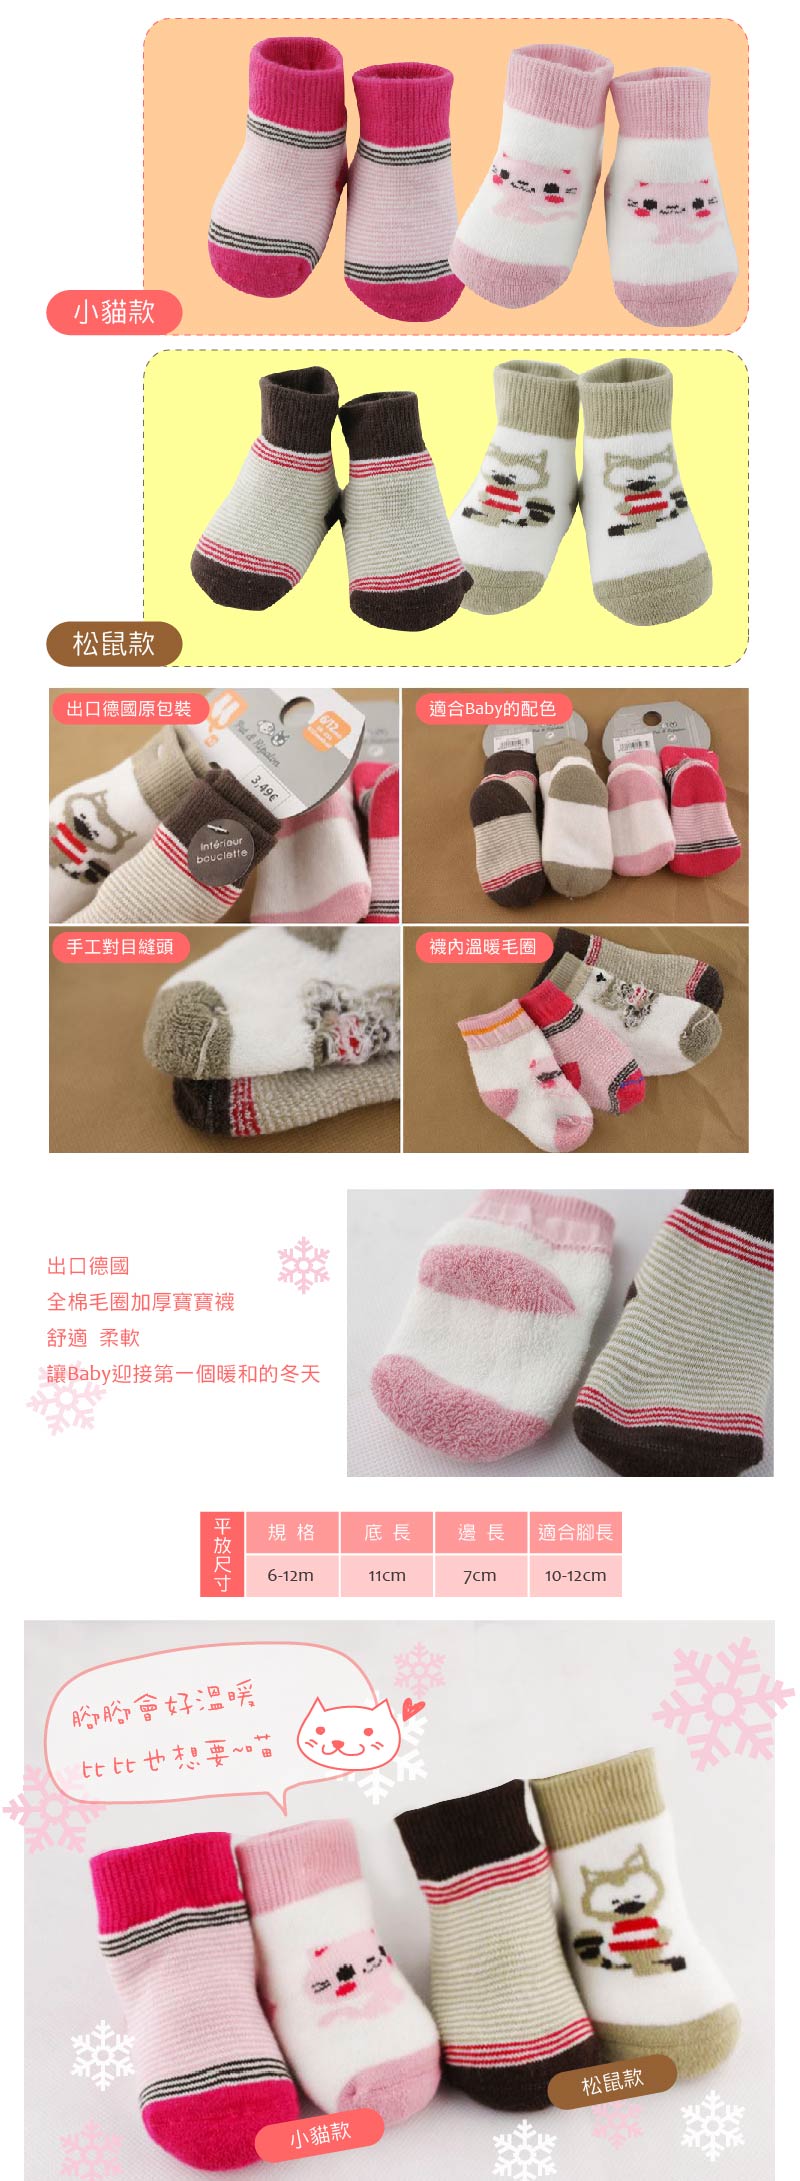 寶寶禦寒對策【JB0018】手工加厚毛圈 寶寶襪 (2雙入) 6-12個月 小貓松鼠 嬰兒襪 童襪